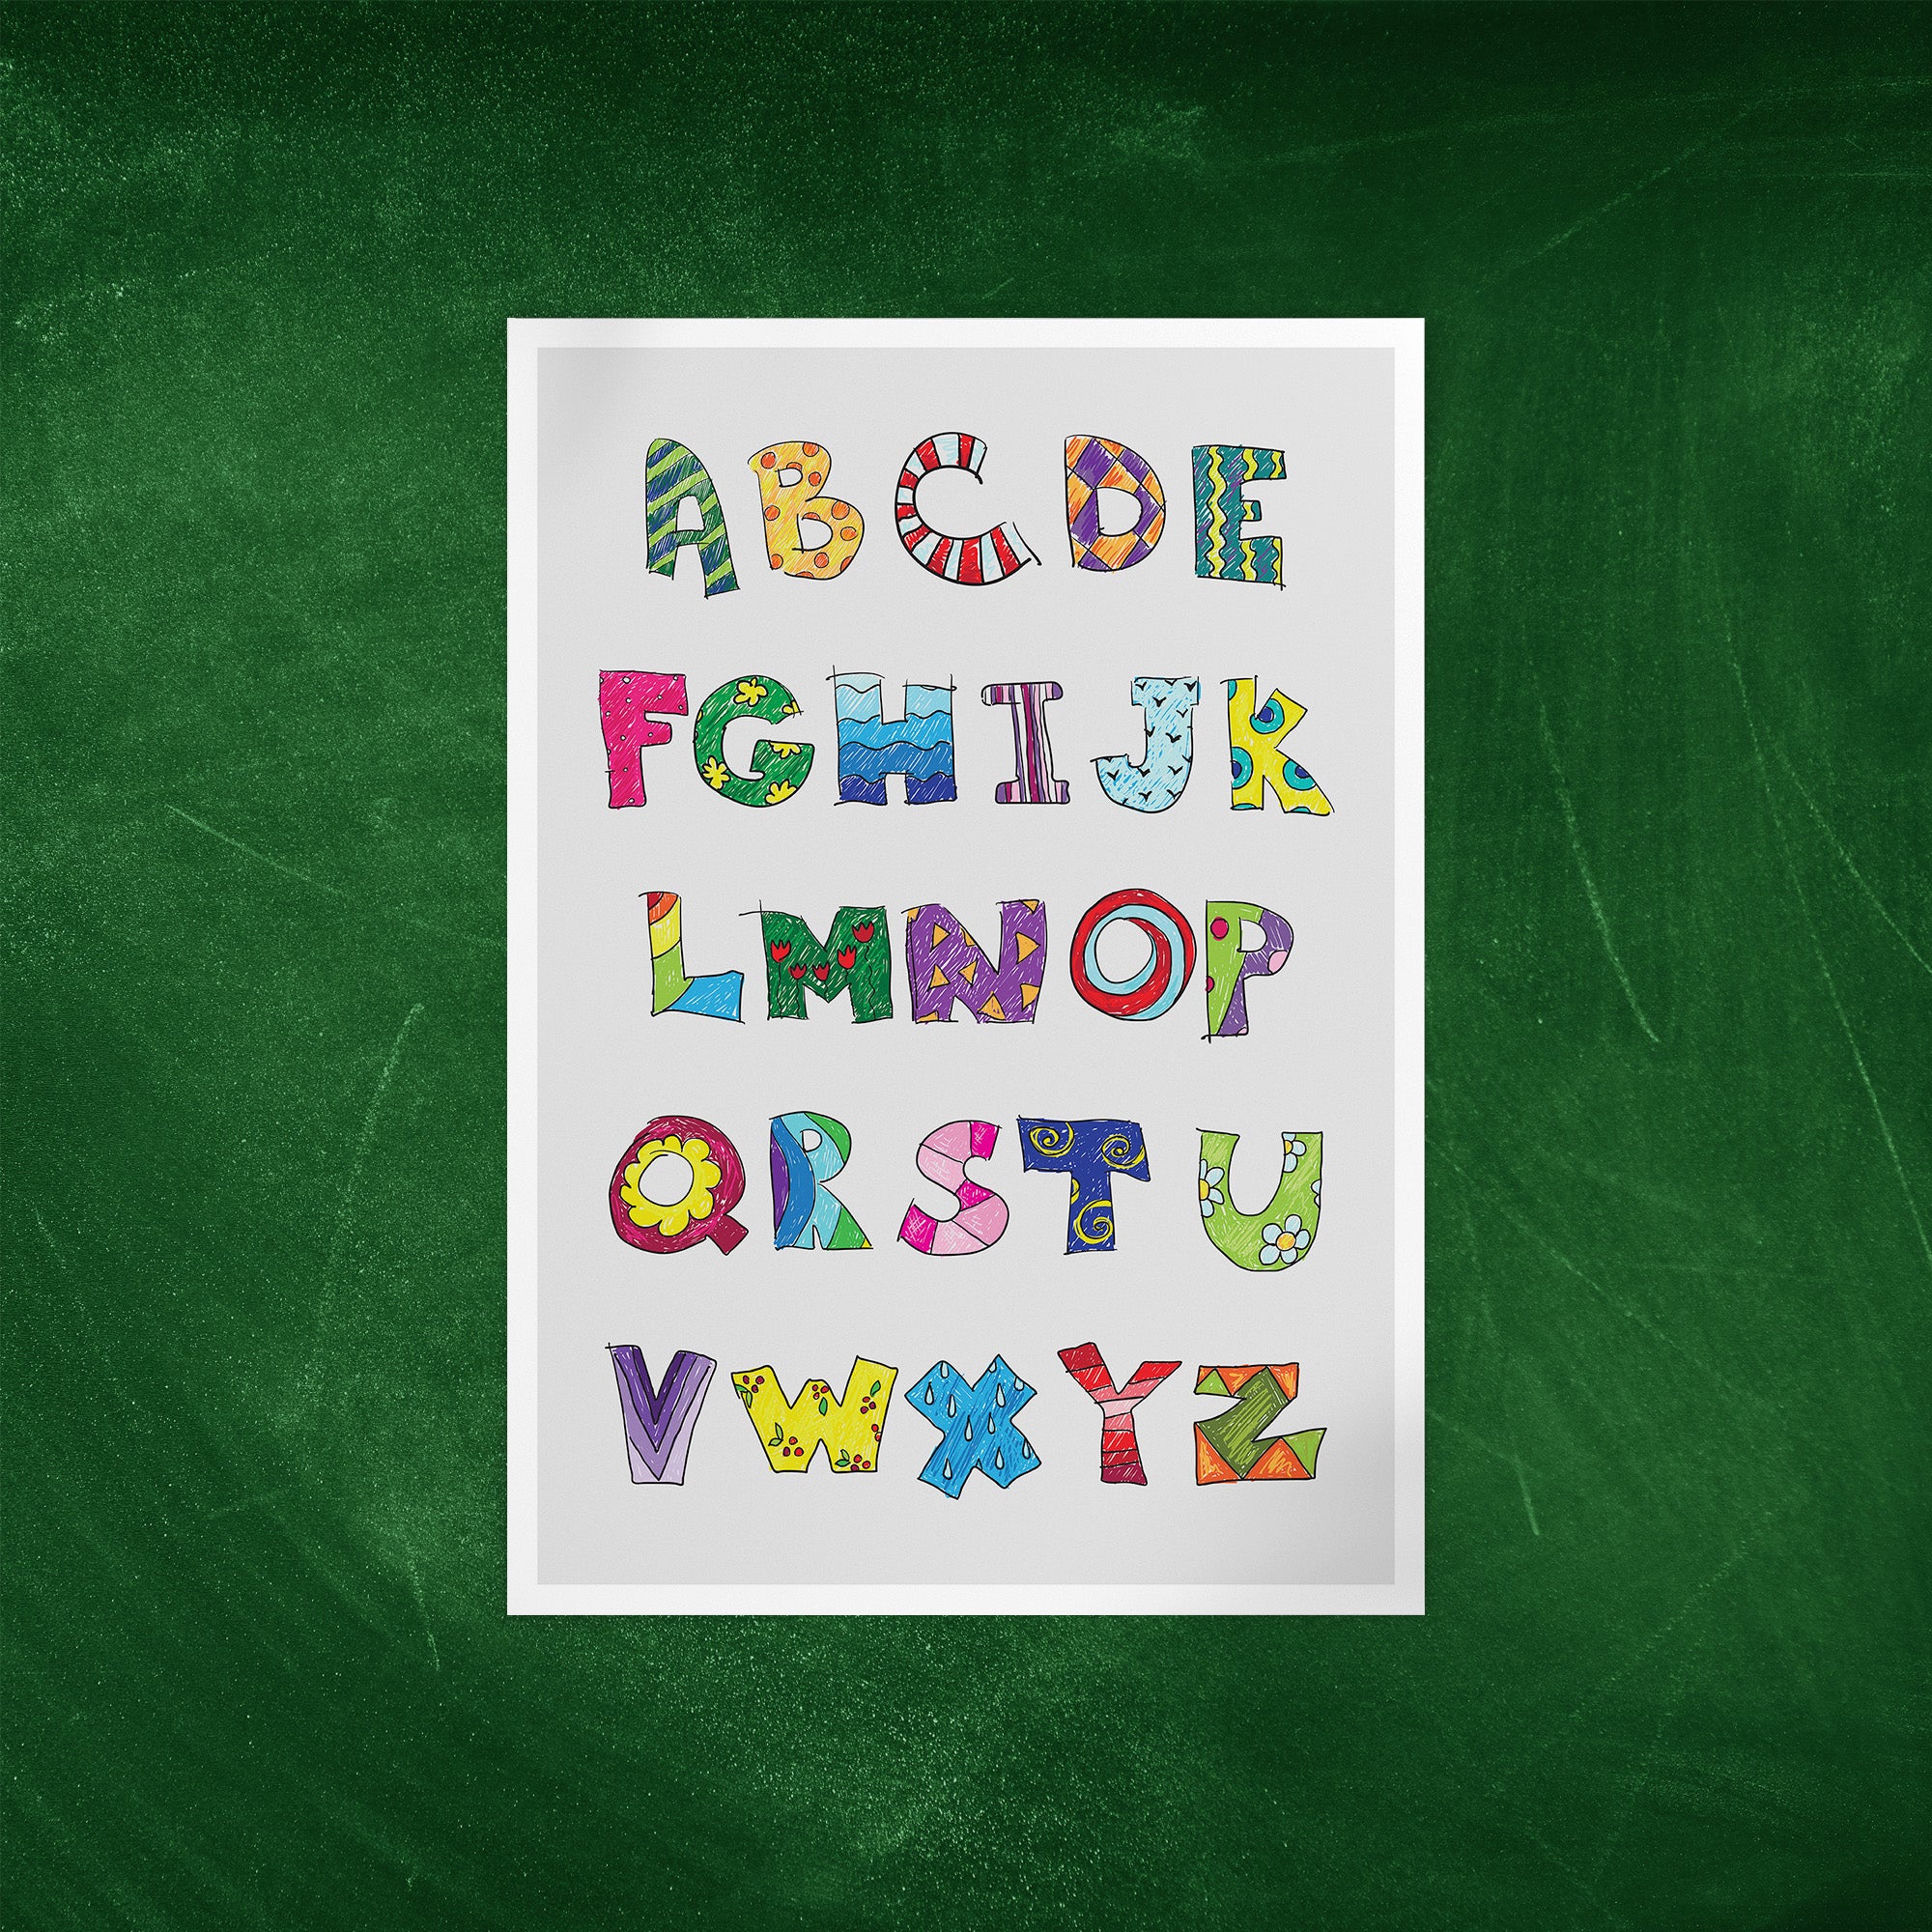 Kleurrijk alfabet van A tot Z